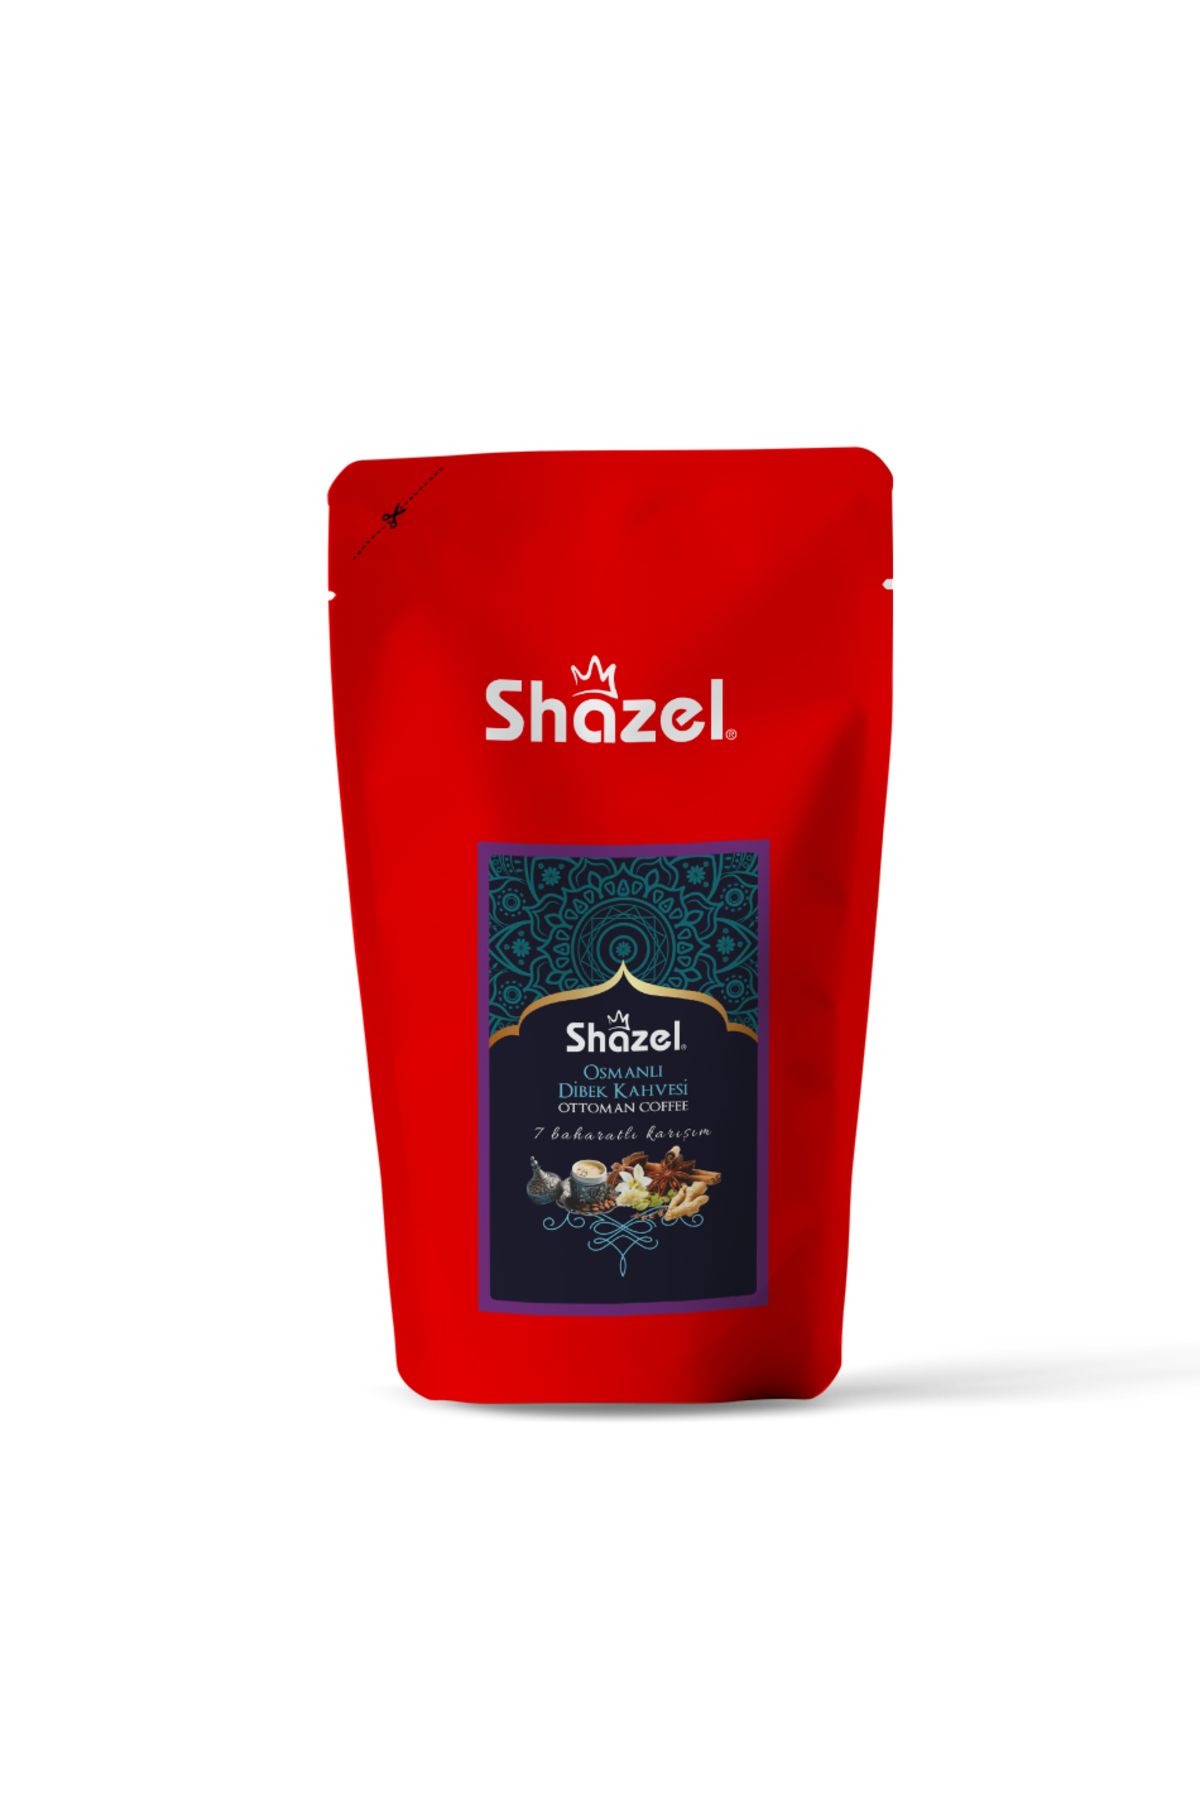 Shazel Osmanlı Dibek Kahvesi 1 Kg